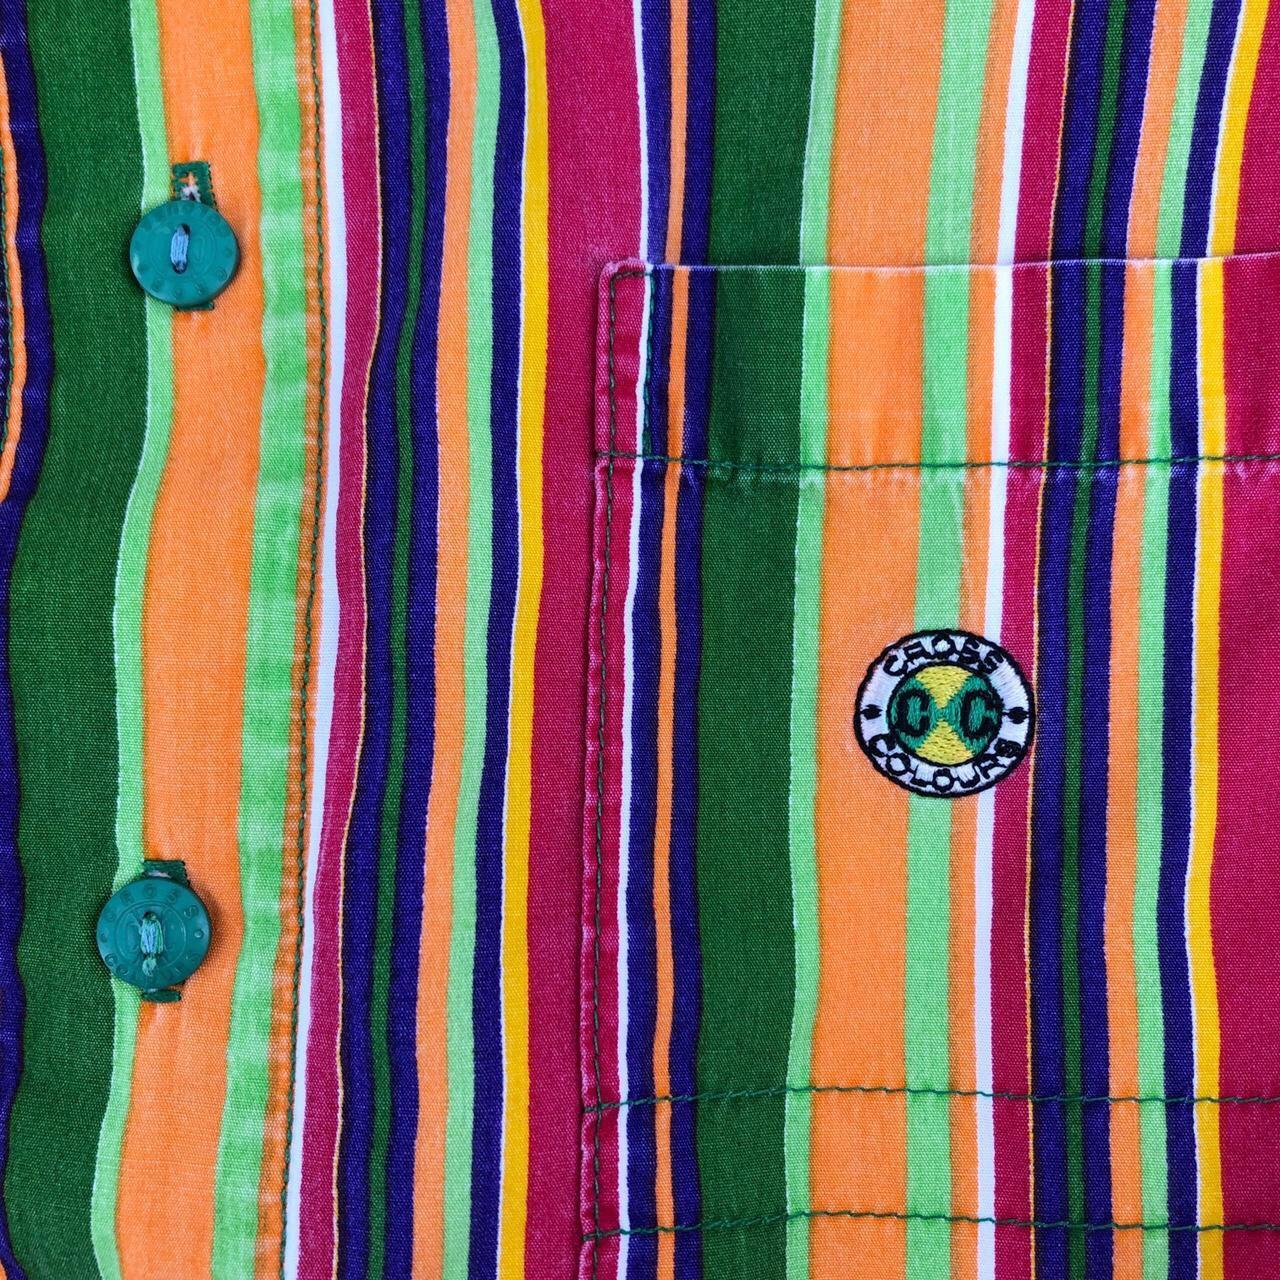 90s vintage Cross Colours button down shirt 1990s... - Depop